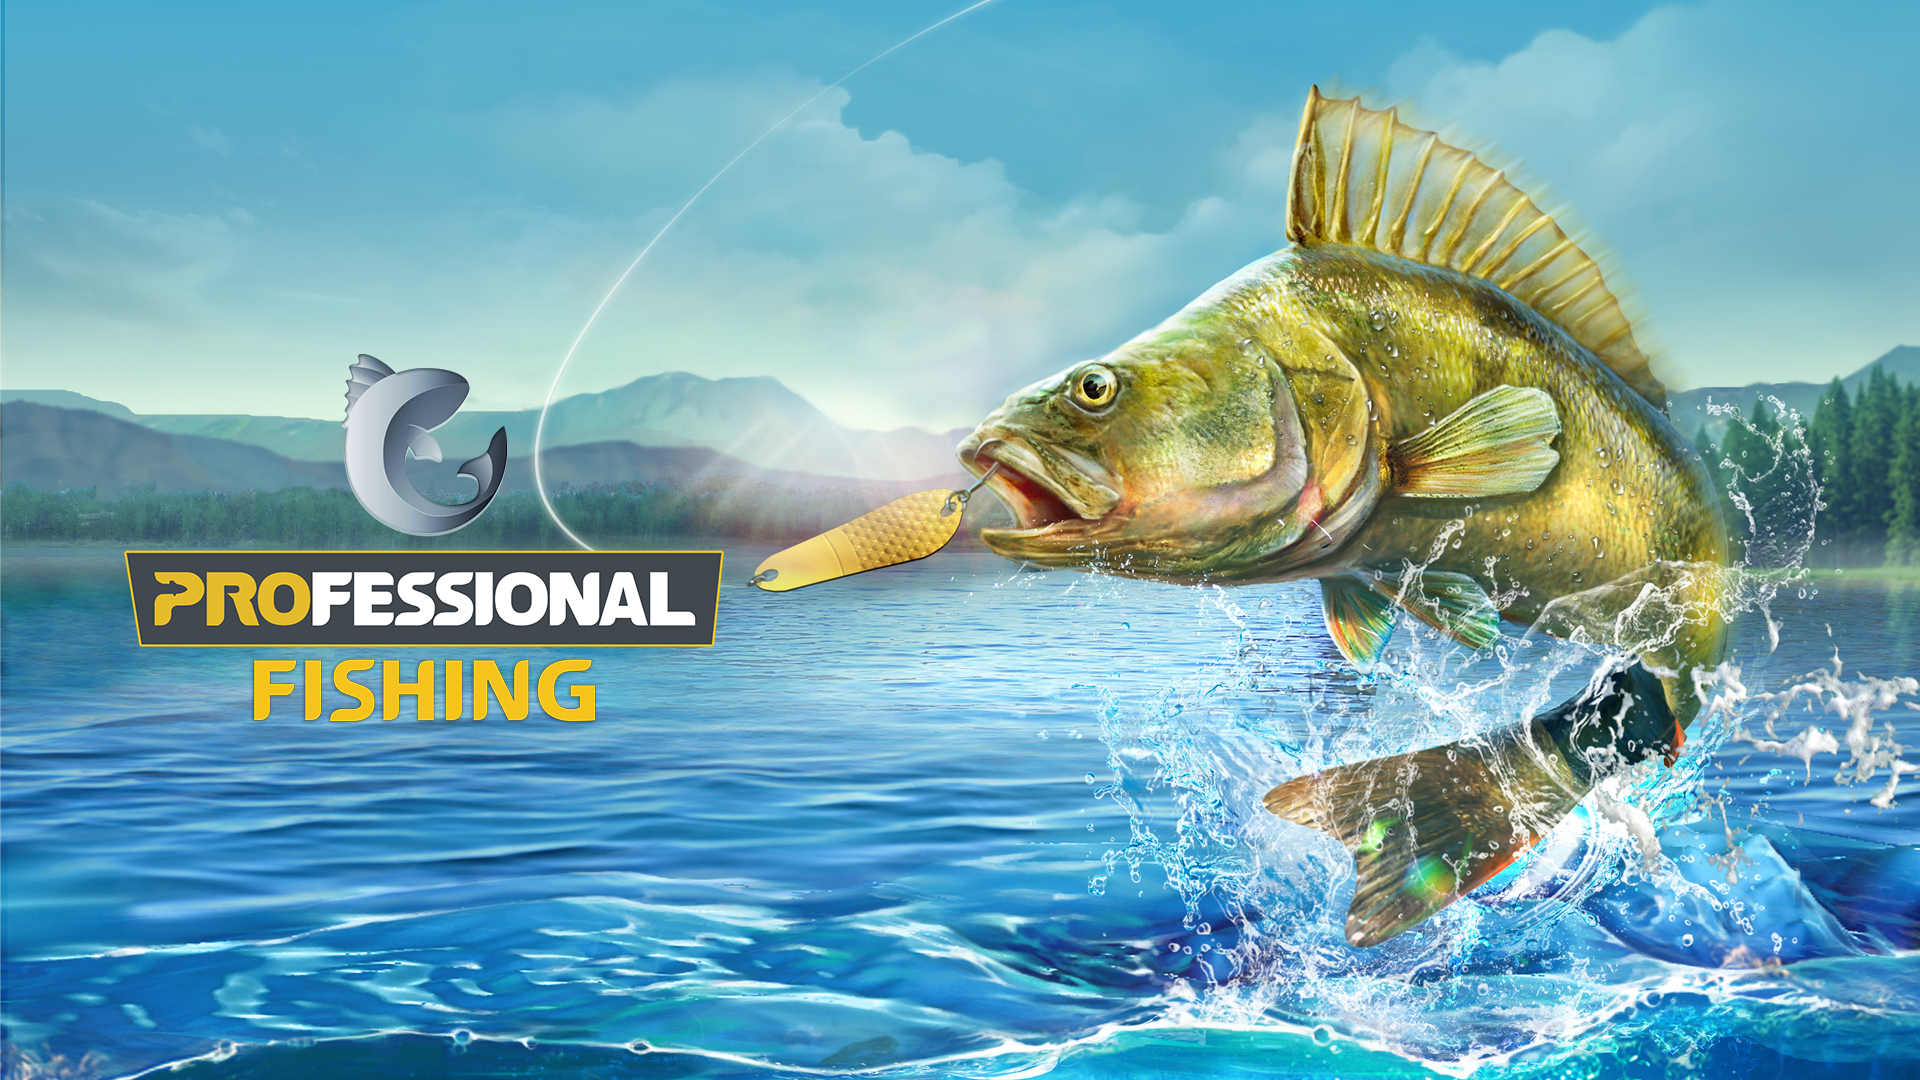 Professional Fishing ahora disponible en Steam para PC, nuevo DLC lanzado